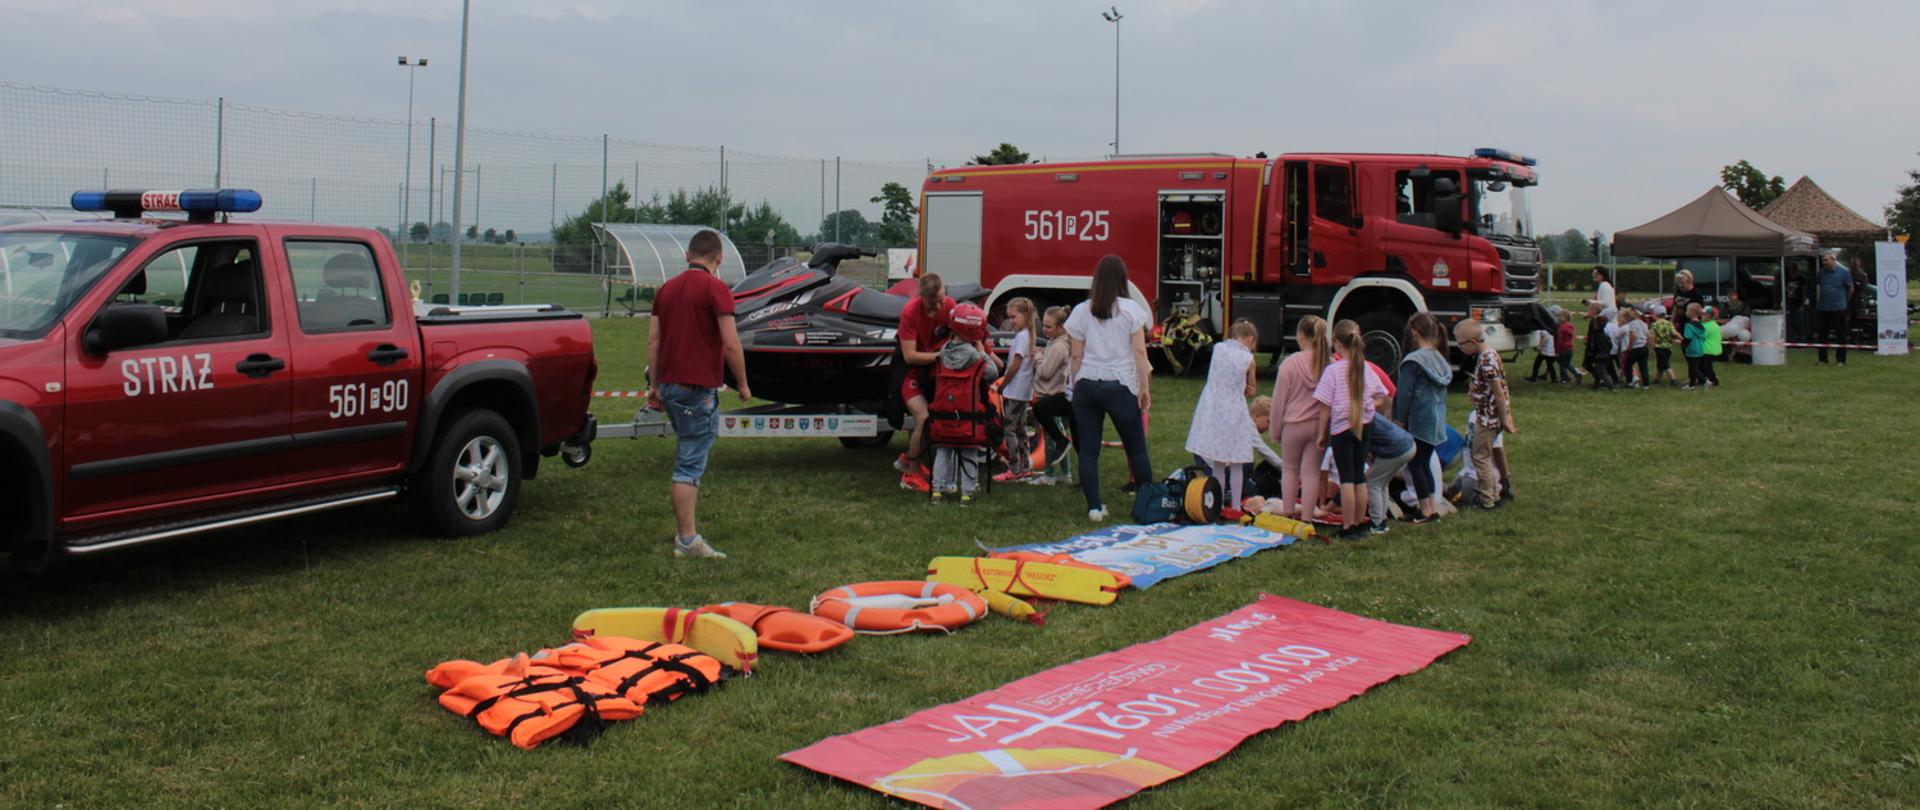 Na pierwszym planie dzieciu uczą się podstaw udzielania pierwszej pomocy, dalej stoi wóz strażacki, który ogląda kolejn grupa uczniów, ze nimi idoczne stanowiska edukacyjne Wojska Polskiego